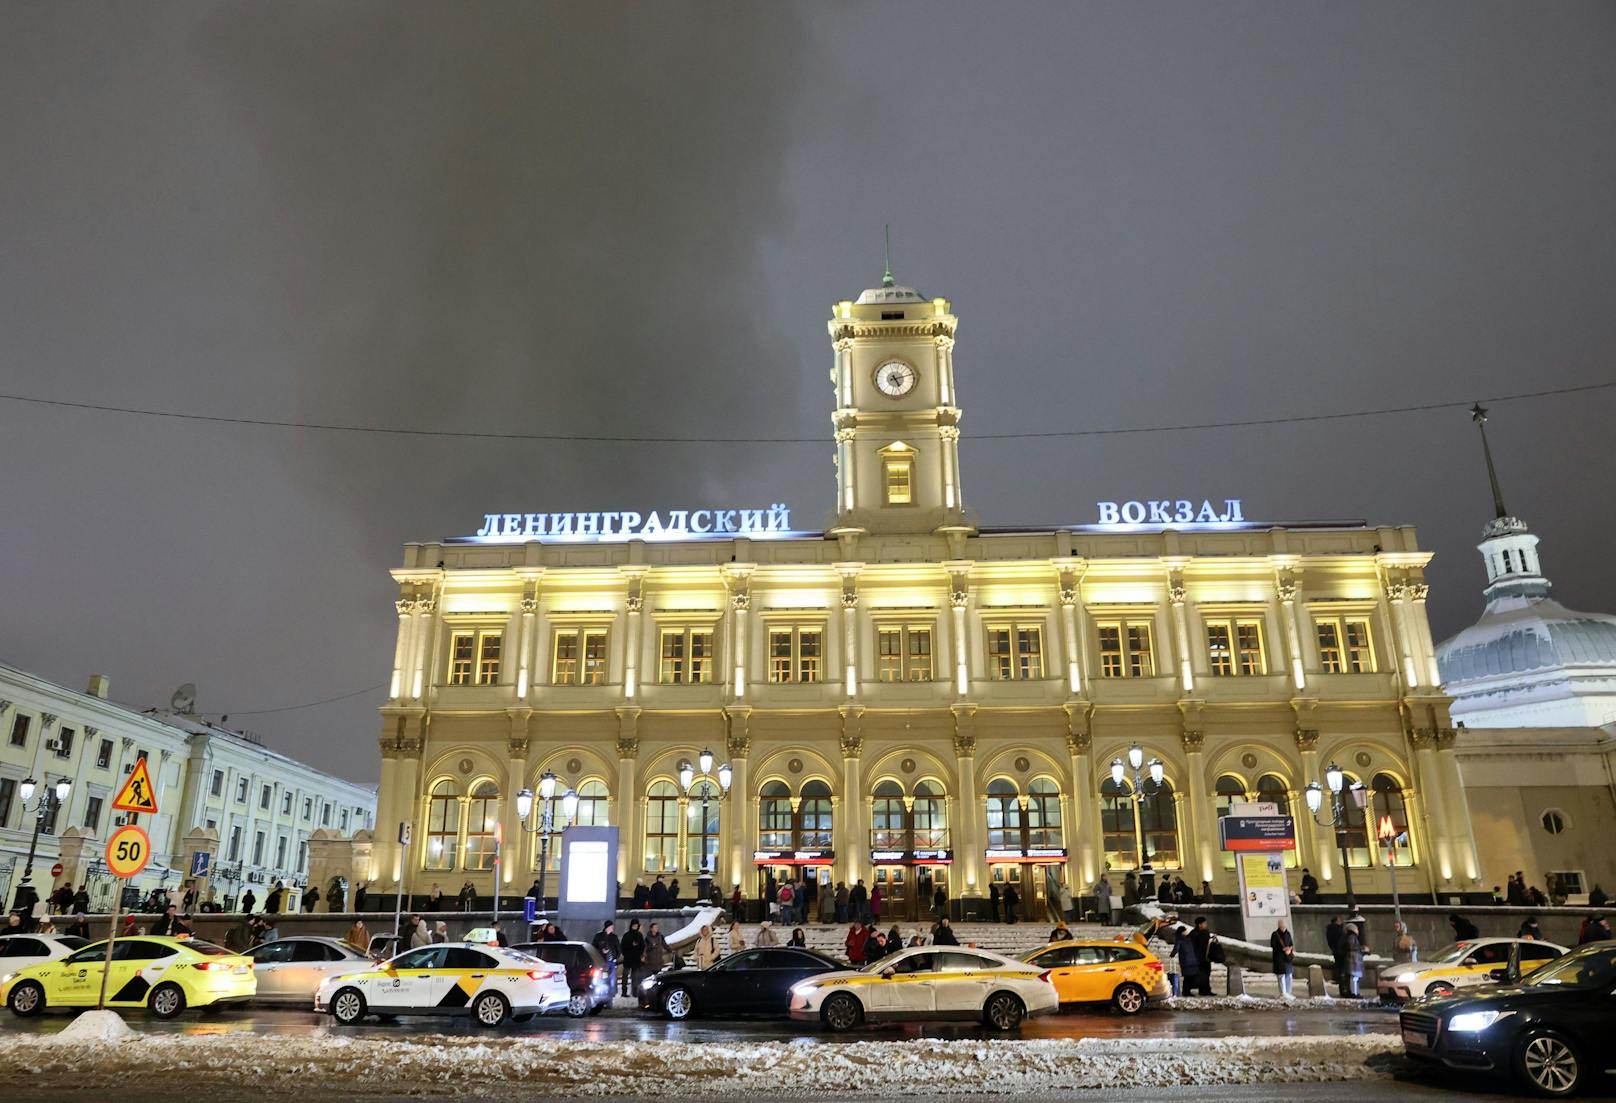 Dort befindet sich unter anderem der wichtige Bahnhof in die Region Leningrad und St. Petersburg (im Bild).